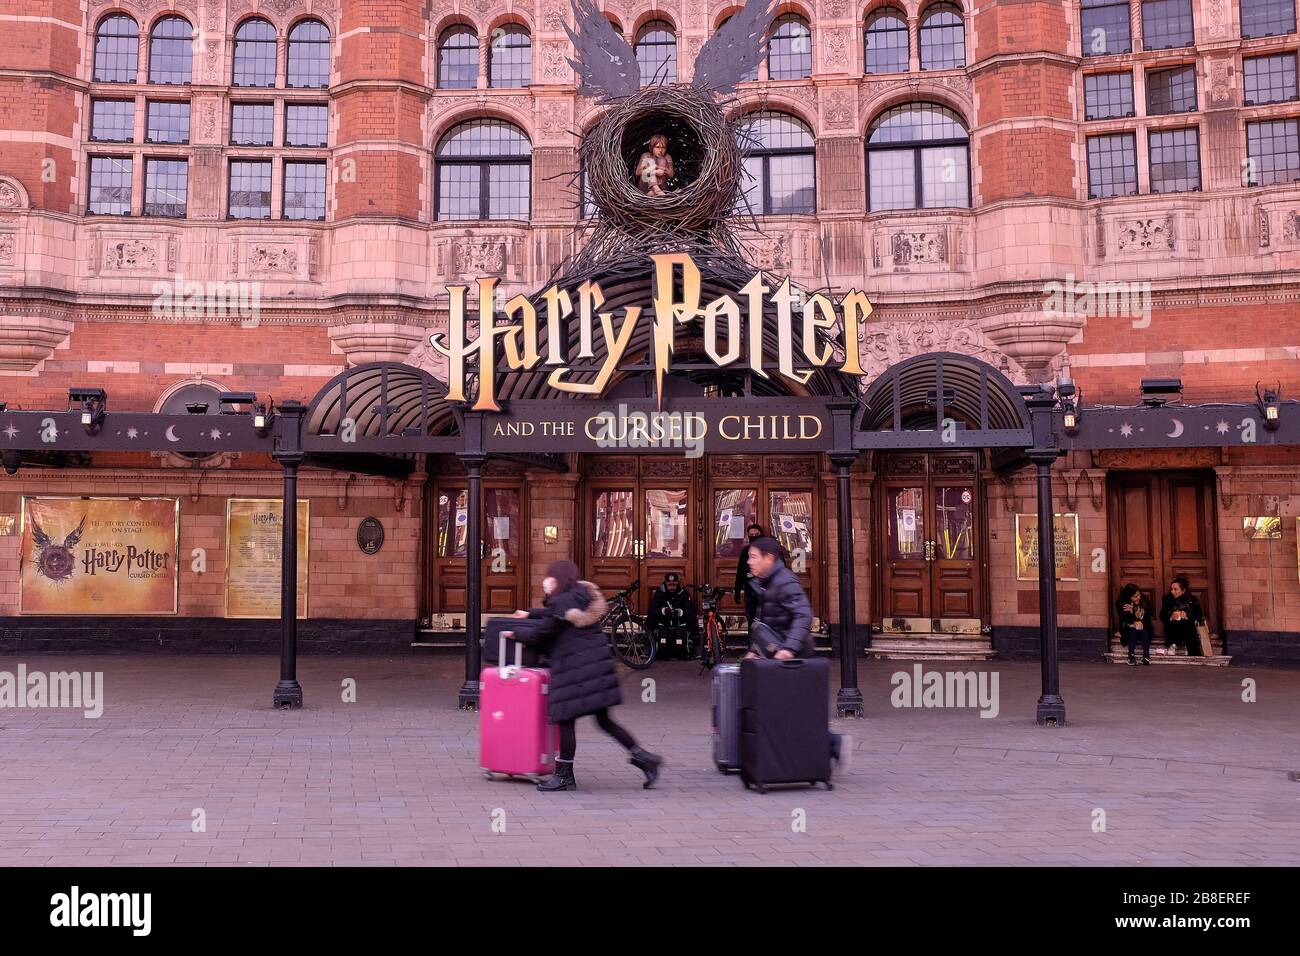 21 mars 2020 - Londres, Angleterre: Harry Potter et le virus Killer - les touristes portant des masques de visage fuient la ville pendant l'éclosion de Coronavirus Banque D'Images